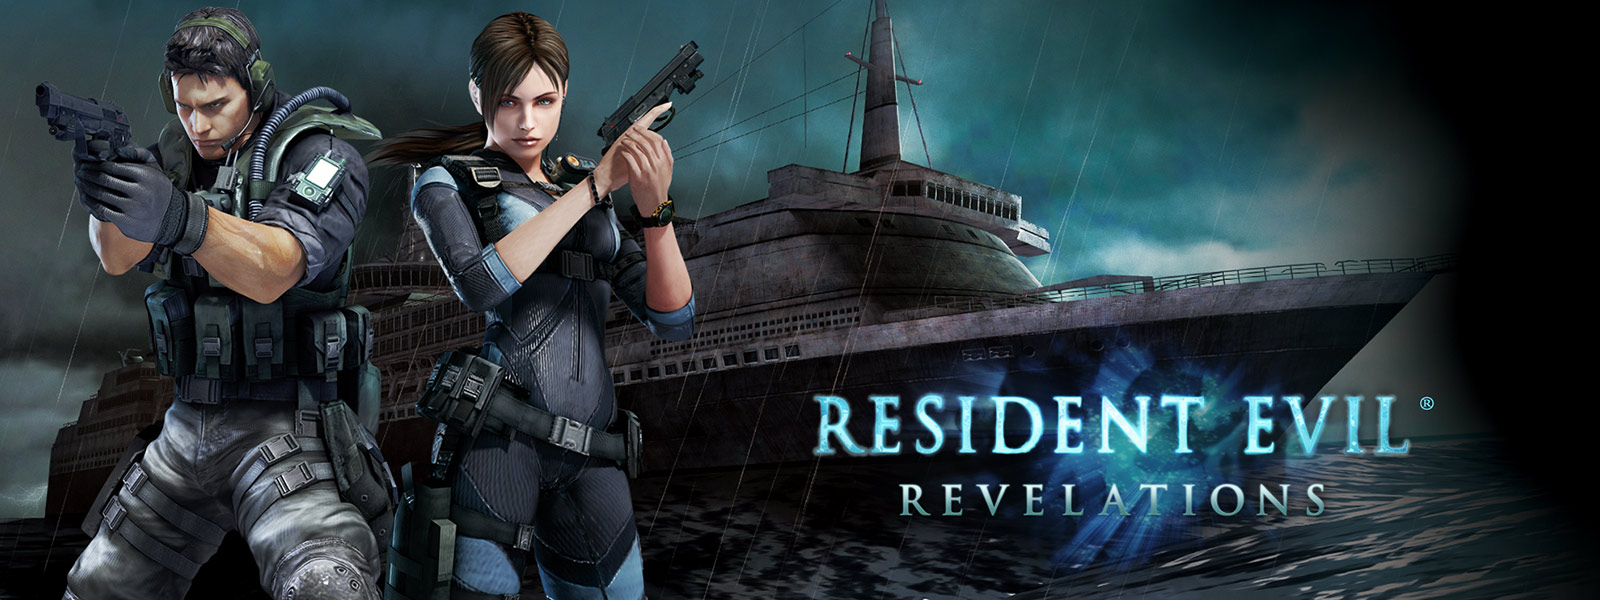 Resident Evil Revelations, due personaggi con pistole davanti a una nave da crociera dall'aspetto spettrale